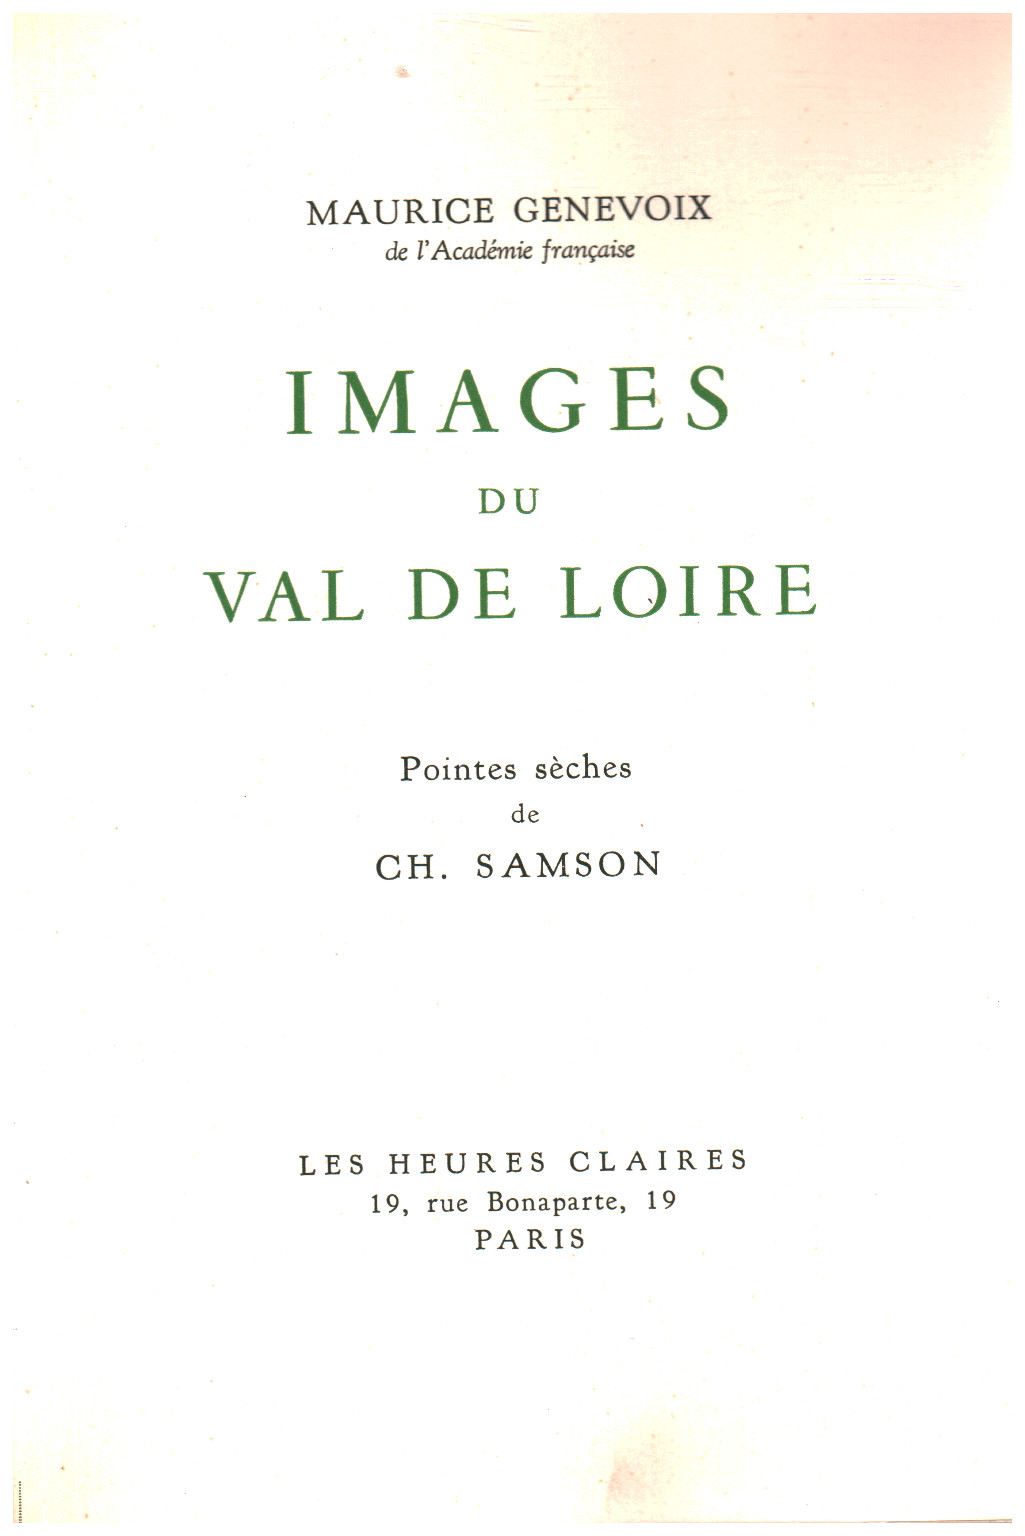 Images du Val de Loire, s.a.